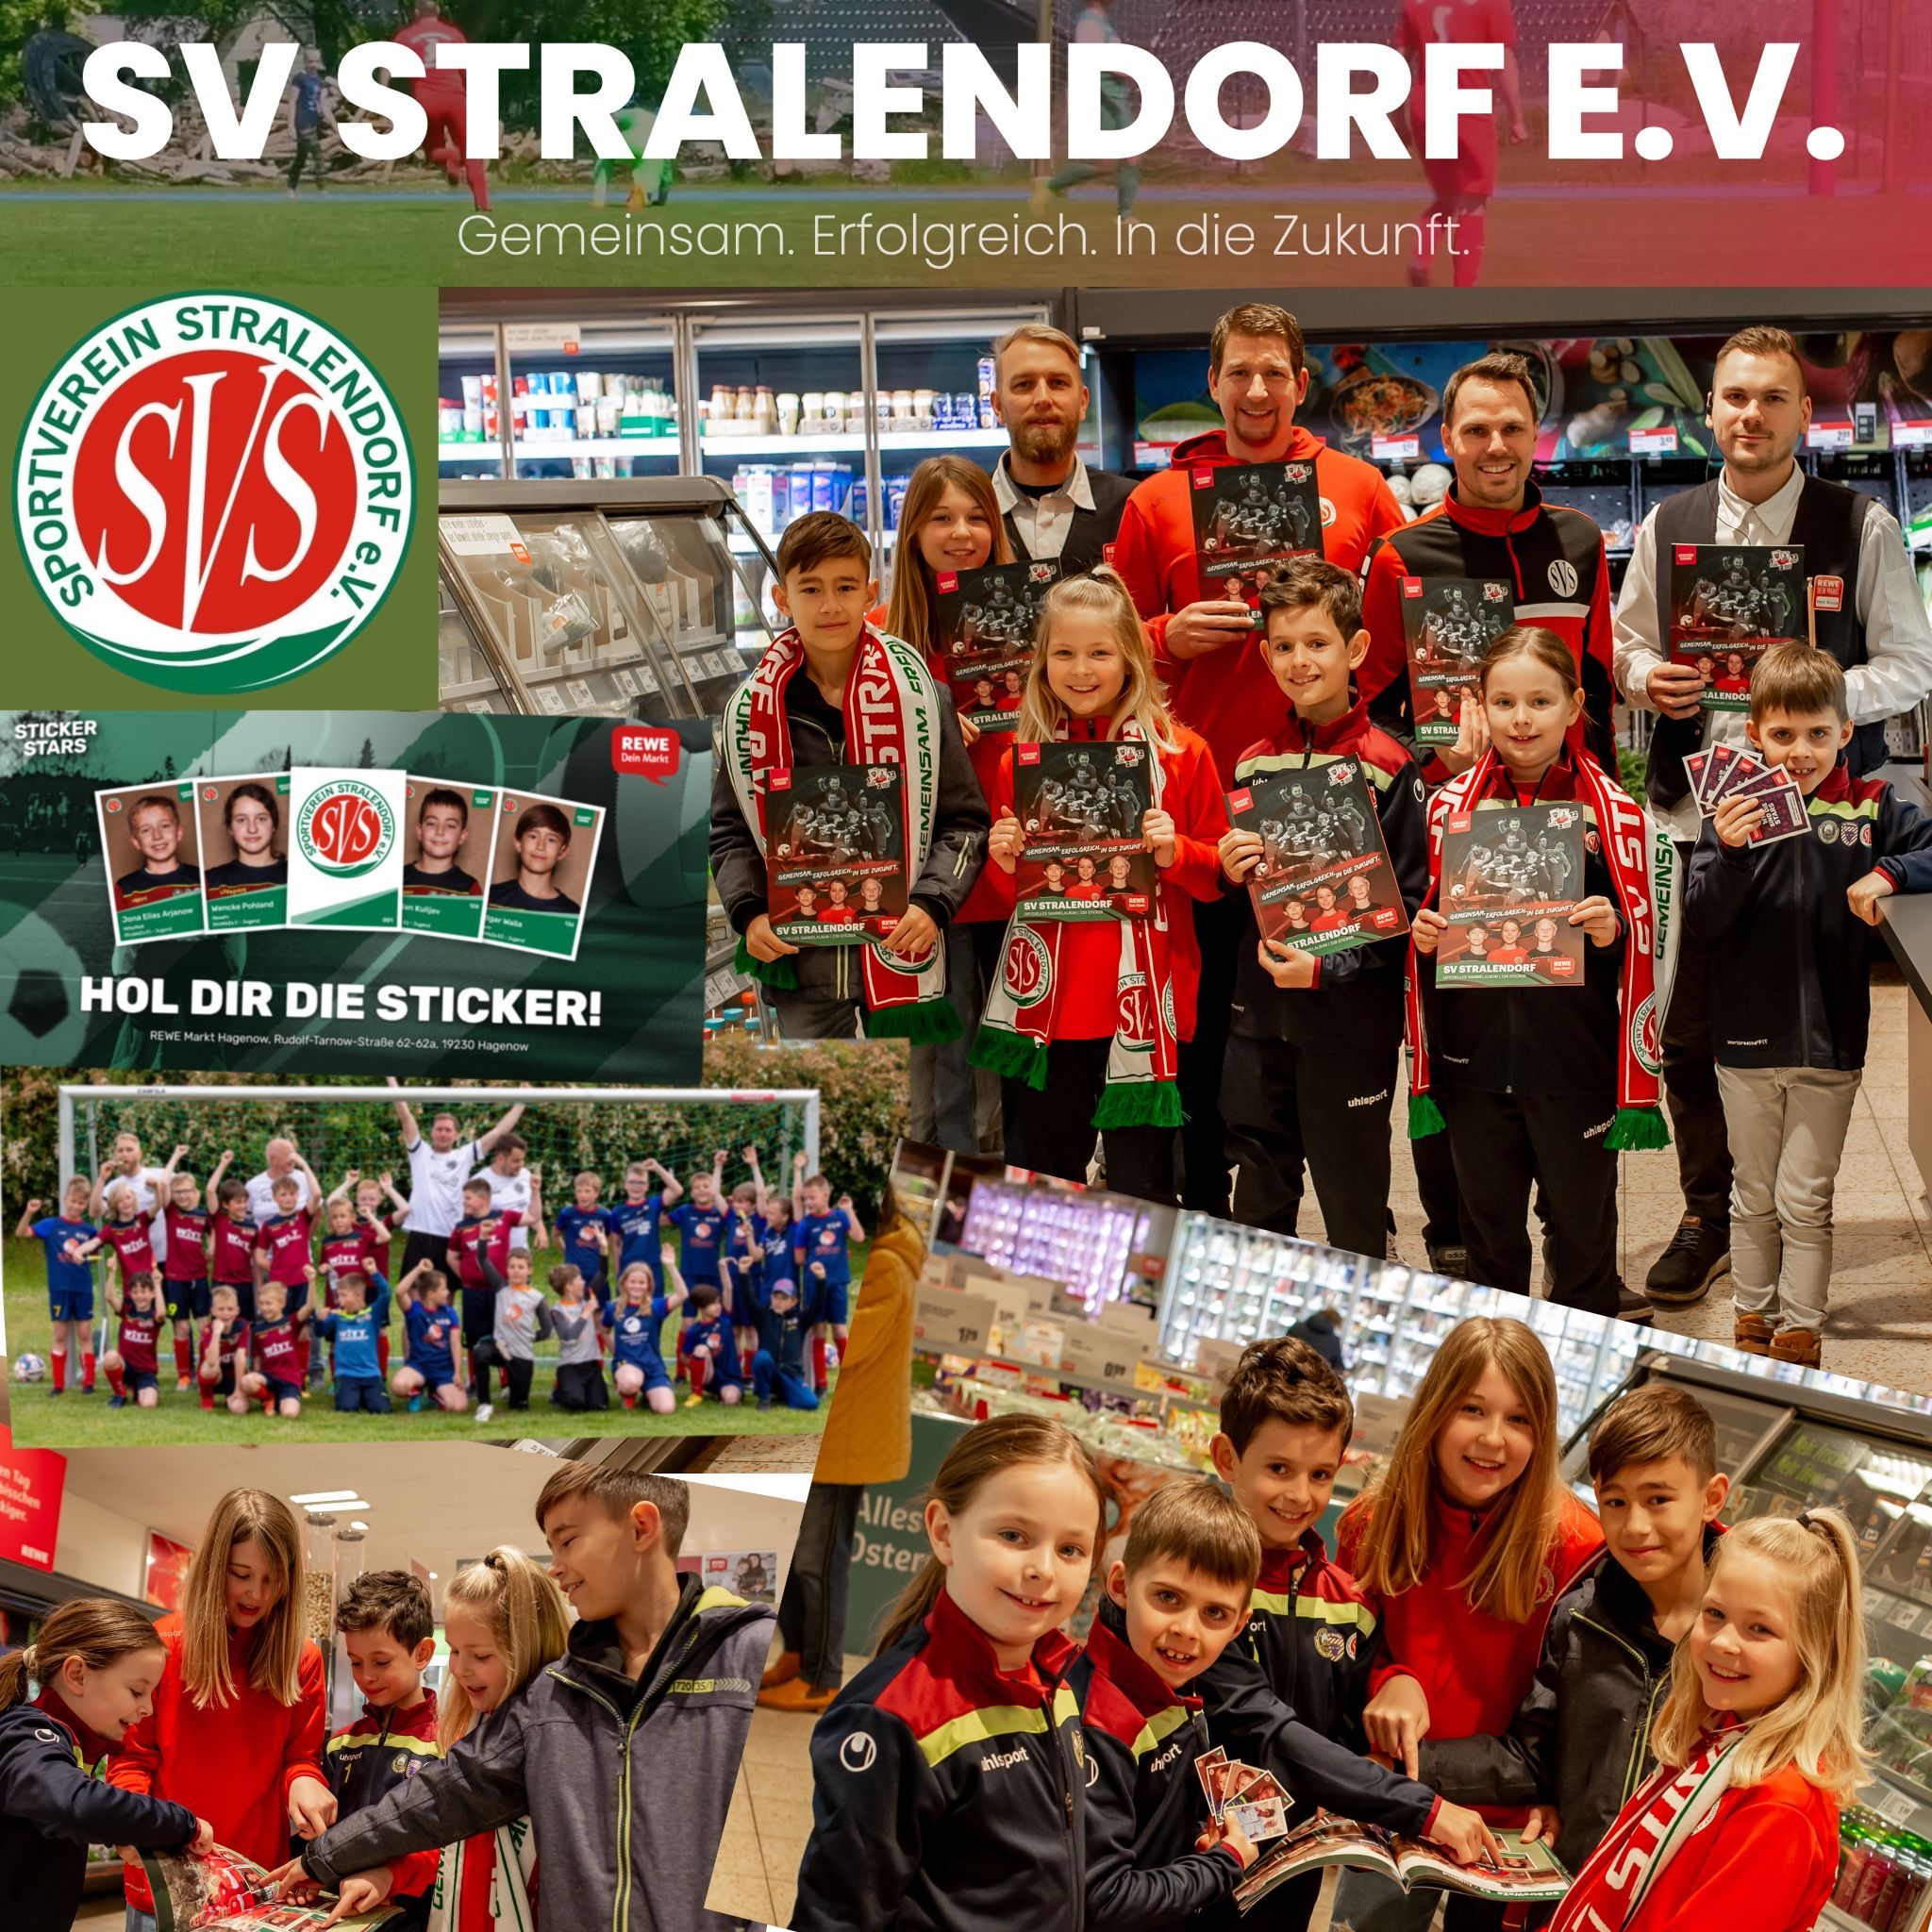 📣 Letzte Chance: Sichert euch eure SV Stralendorf Sticker bis zum 06.05.2023! 📣